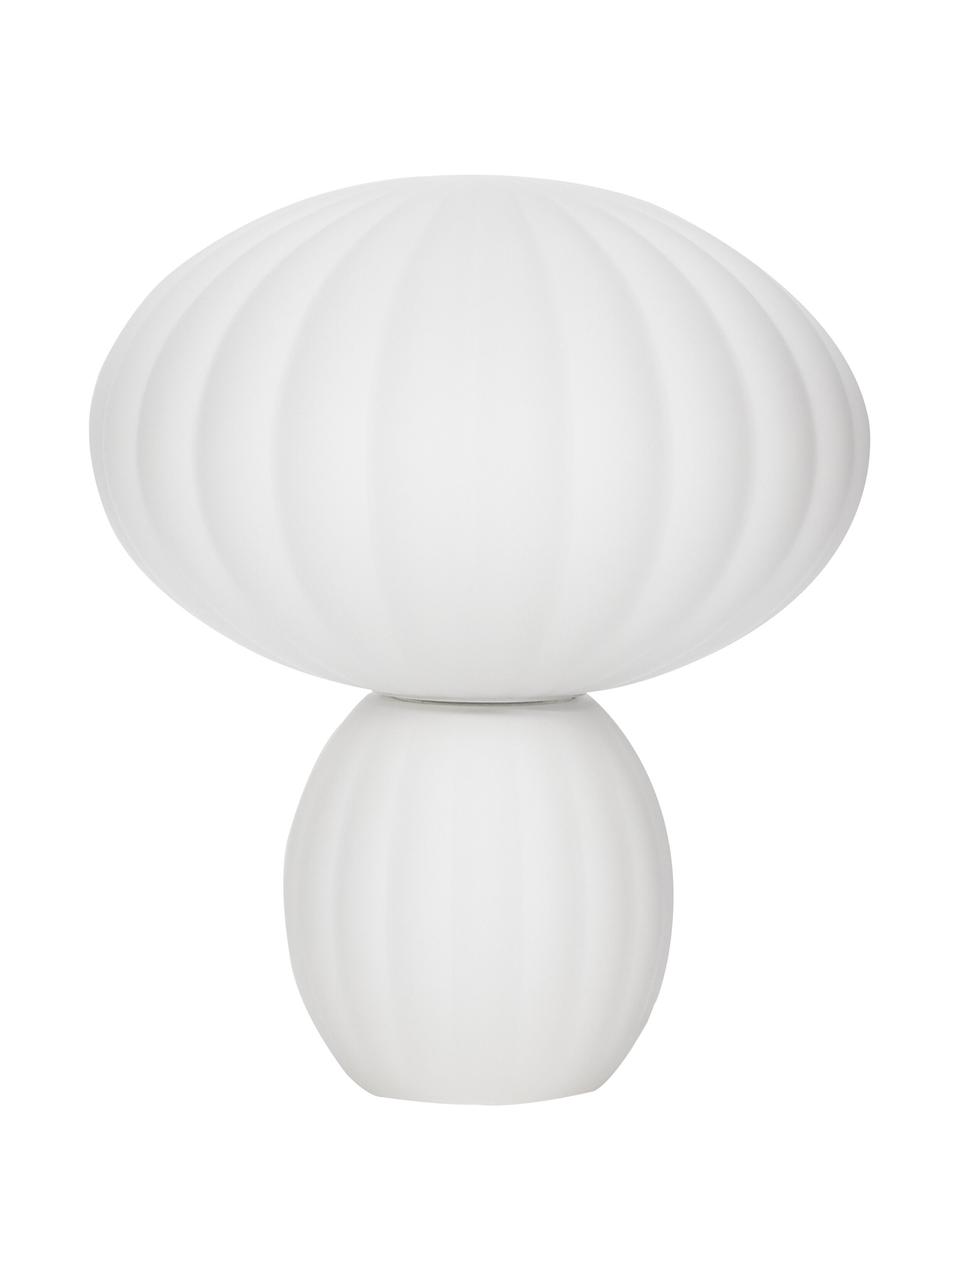 Kleine Tischlampe Bluni aus Opalglas, Lampenschirm: Opalglas, Lampenfuß: Metall, lackiert, Weiß, Ø 23 x H 28 cm